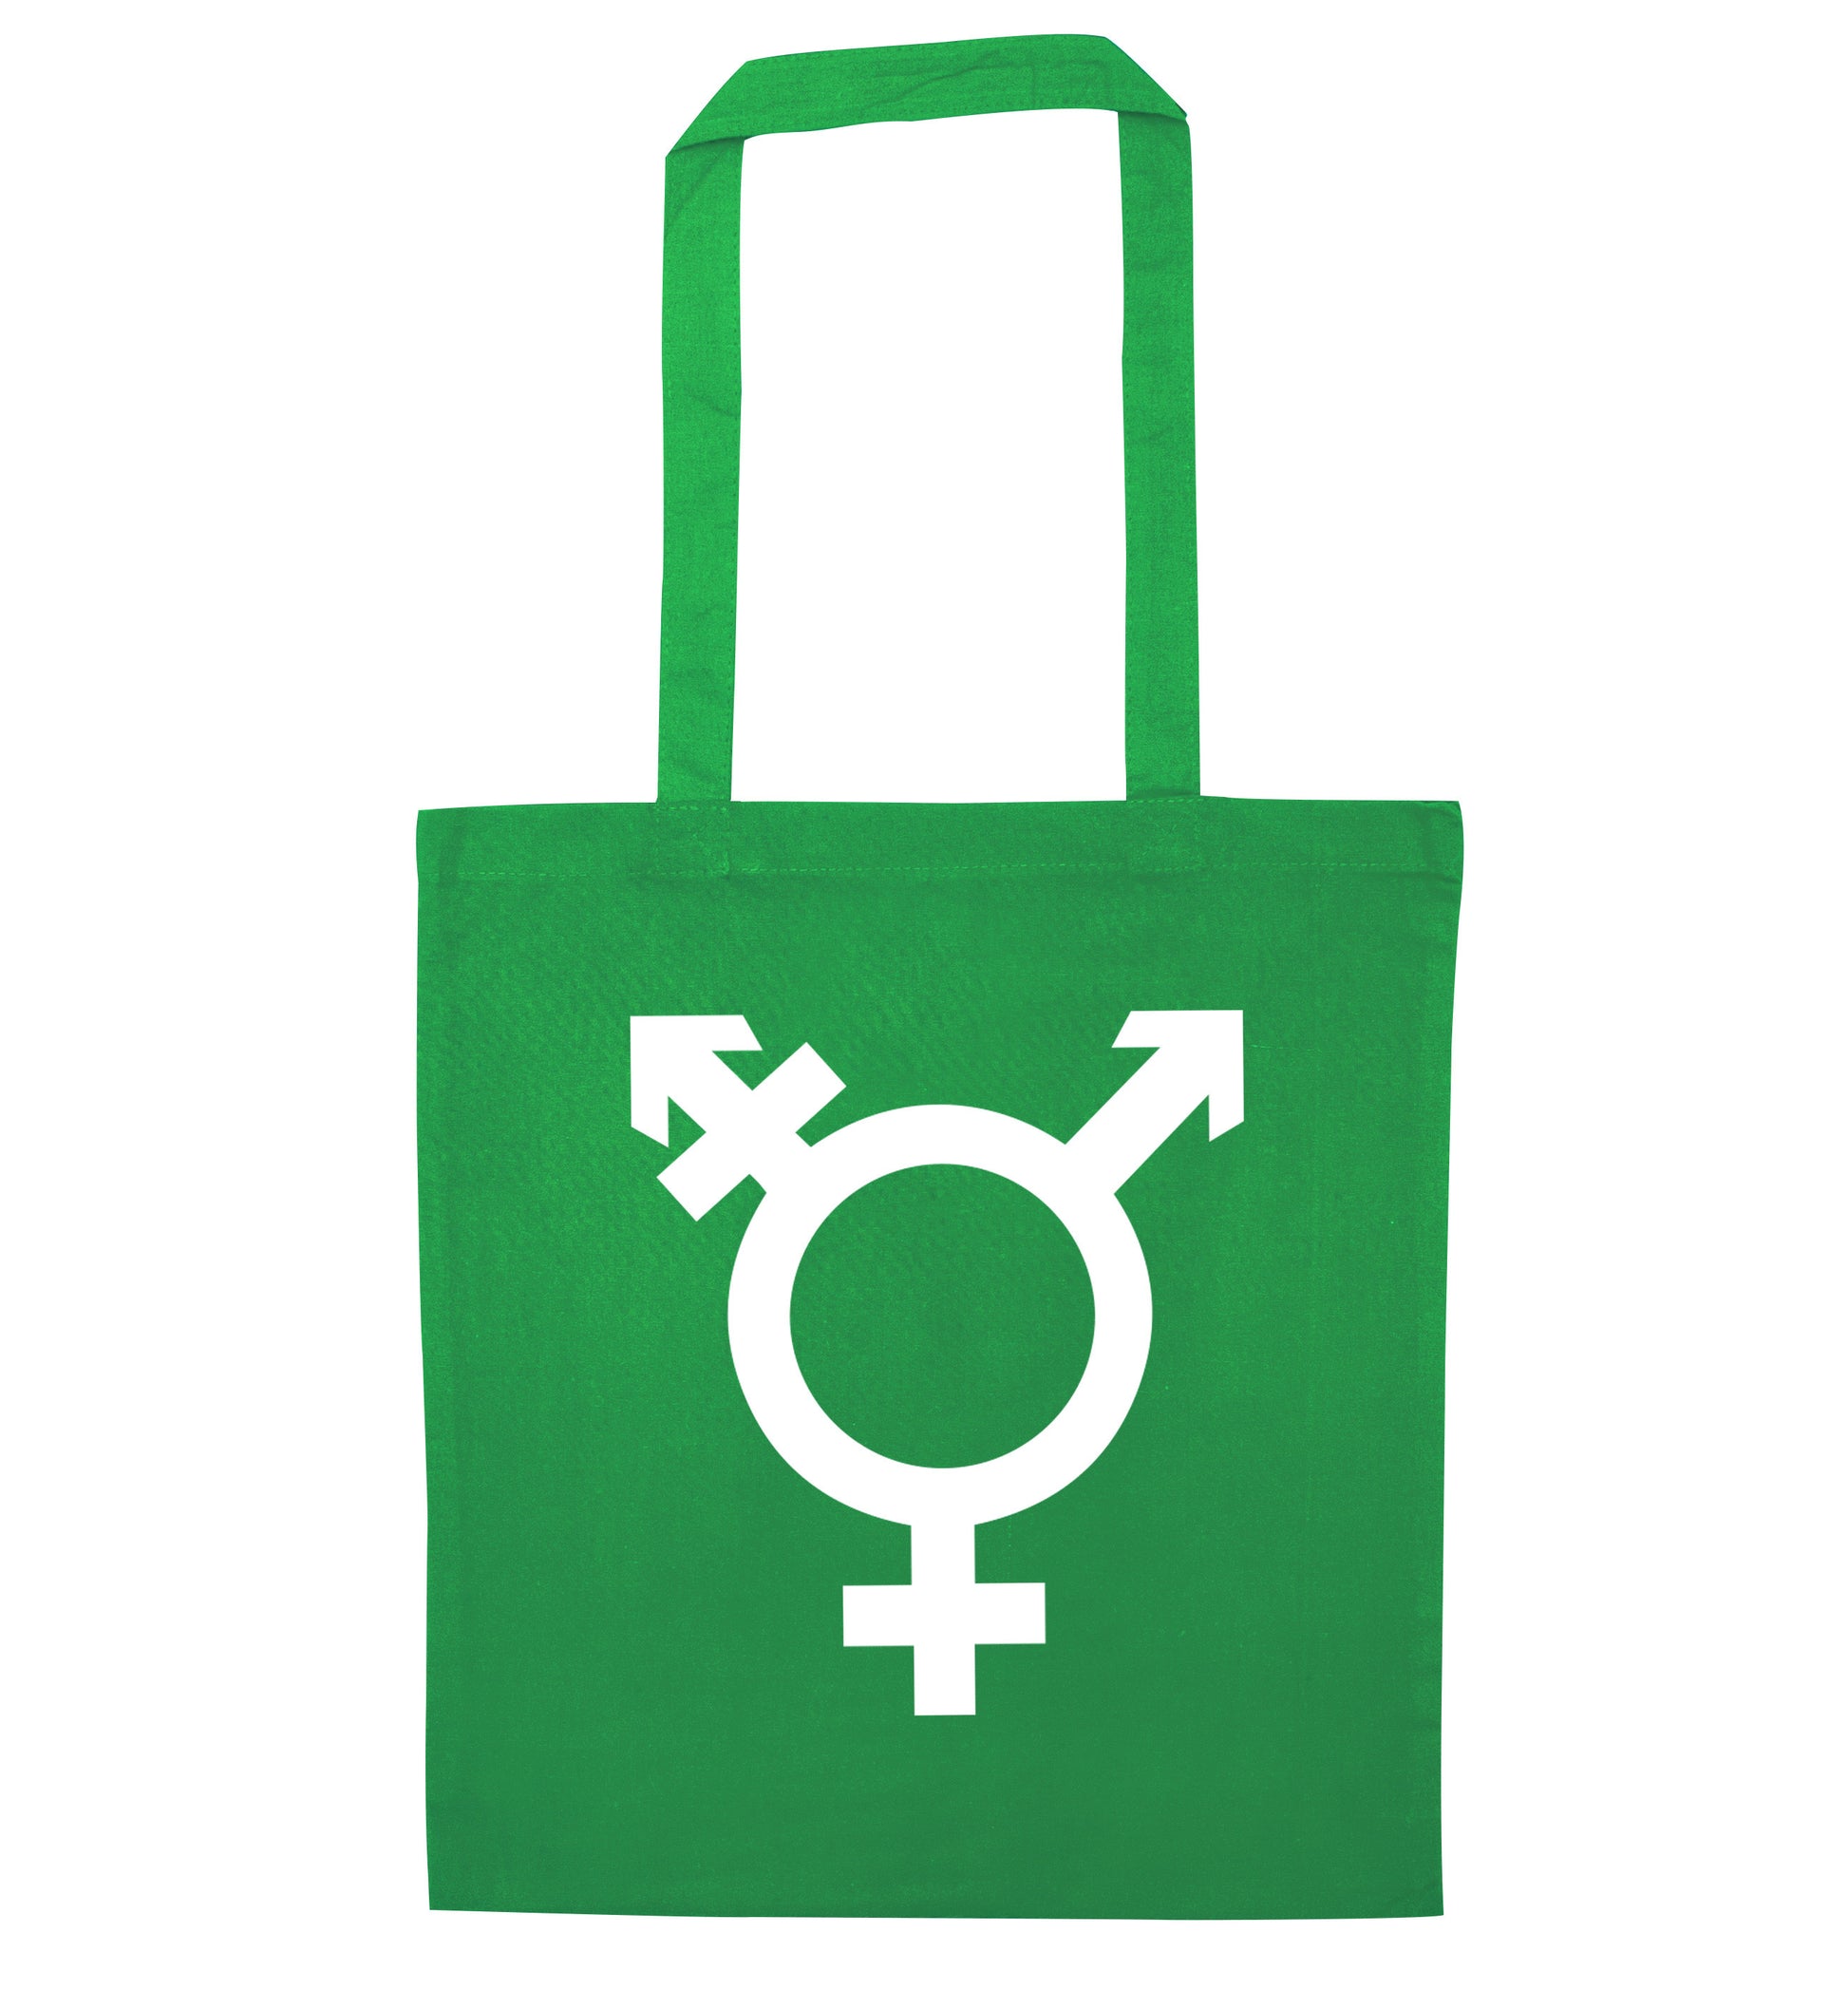 Gender neutral symbol large green tote bag